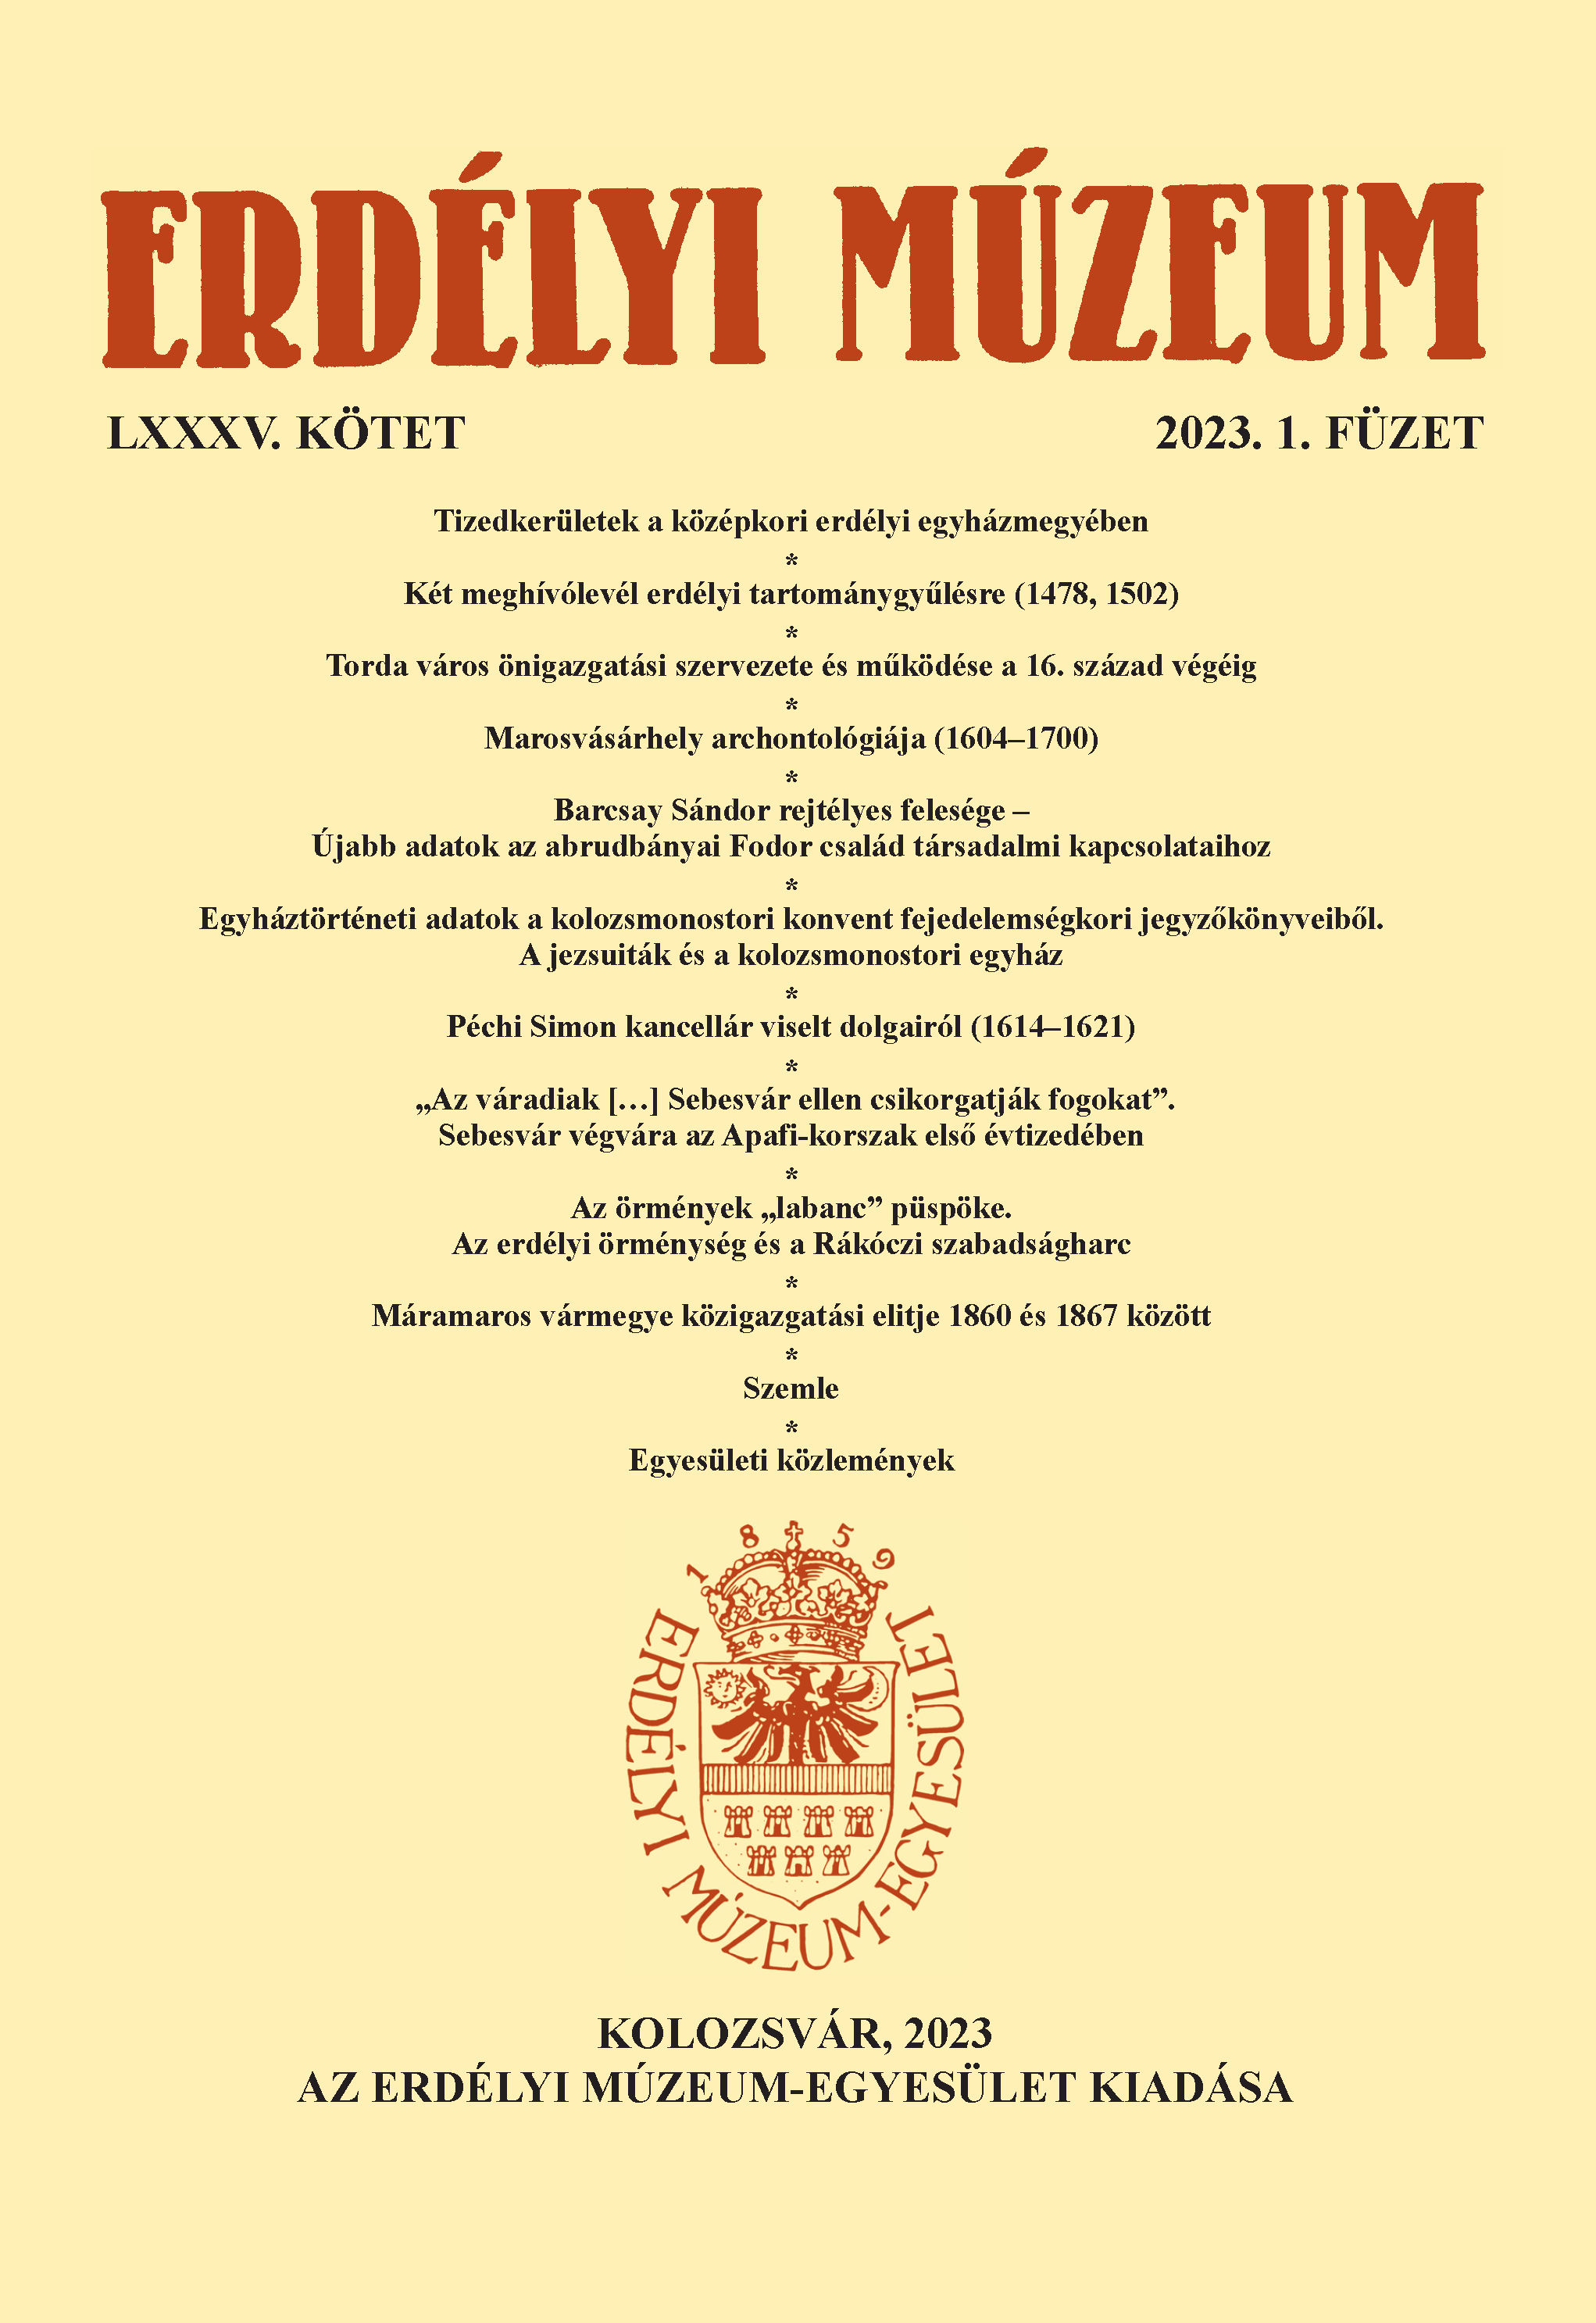 Két meghívólevél erdélyi tartománygyűlésre (1478, 1502)